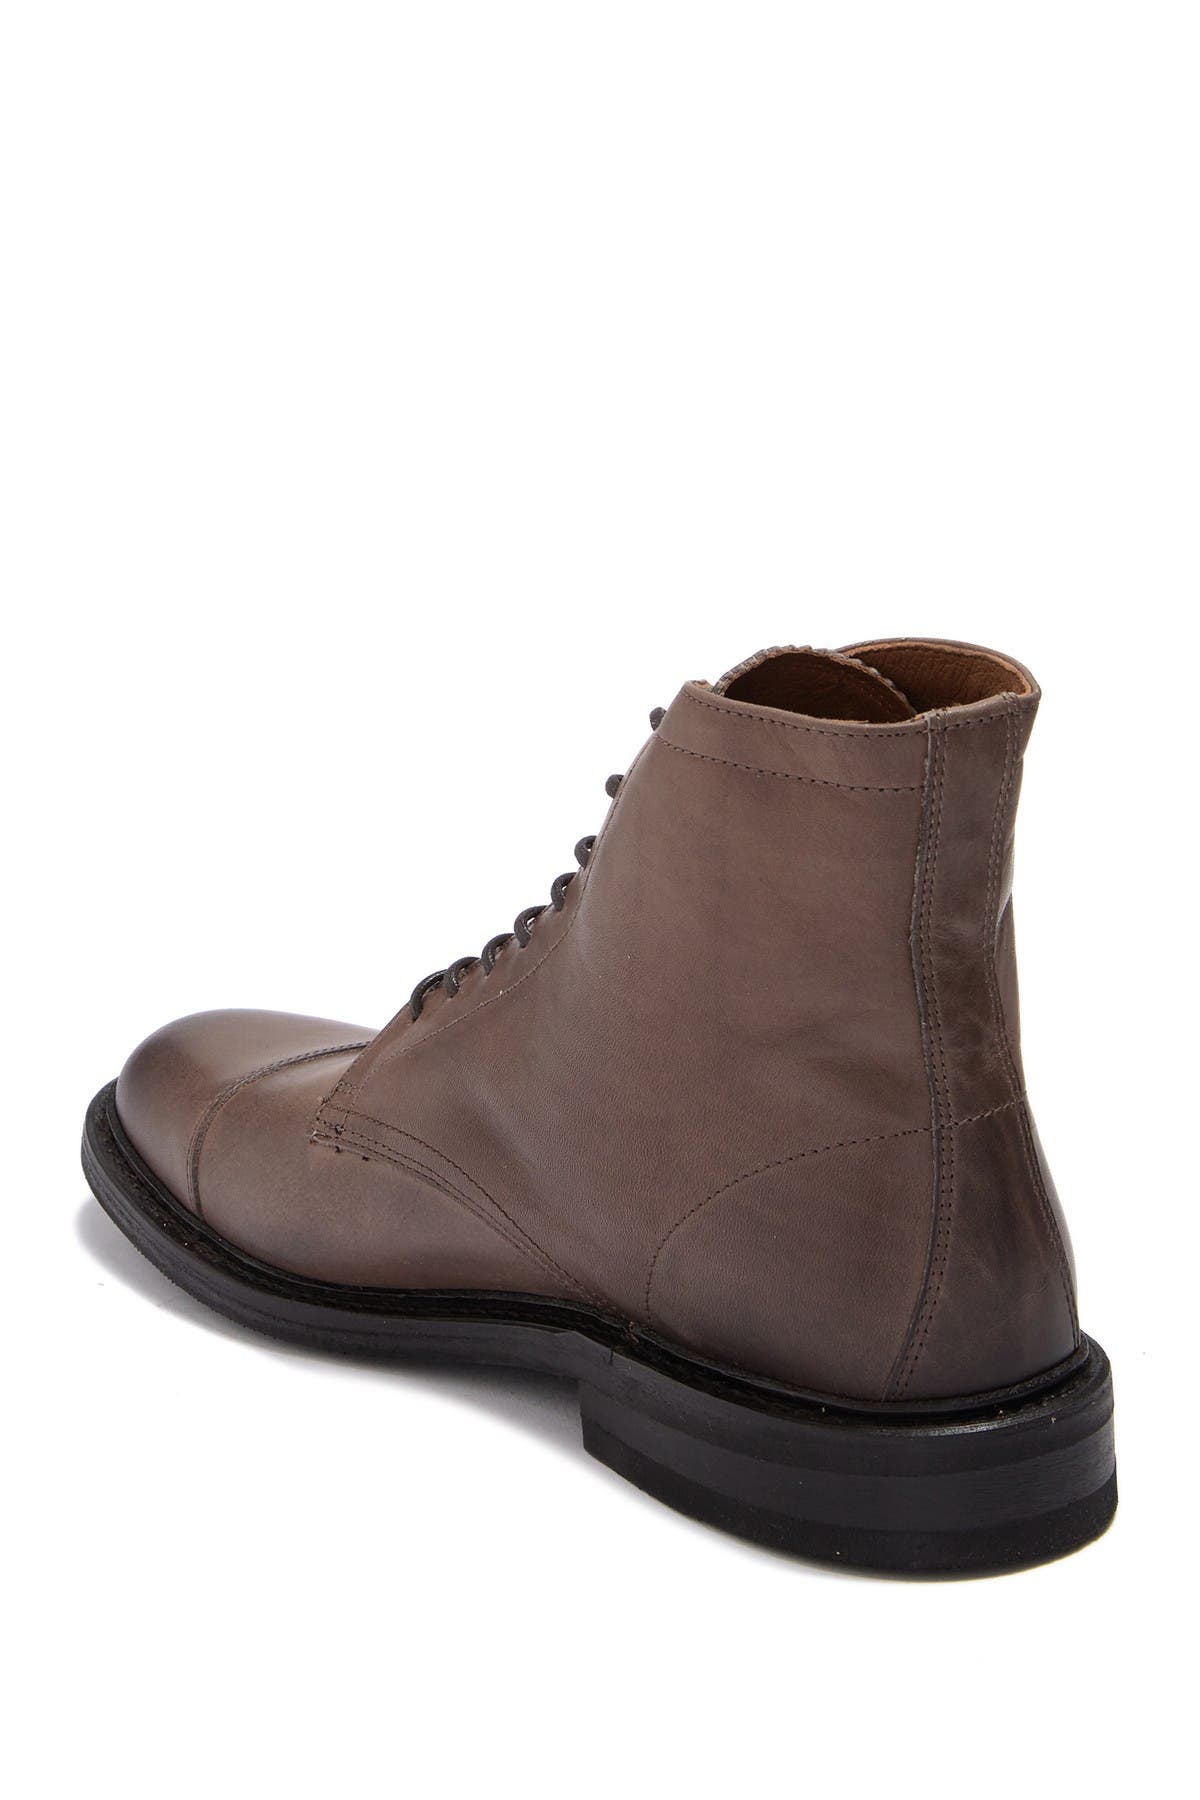 frye seth cap toe leather boots